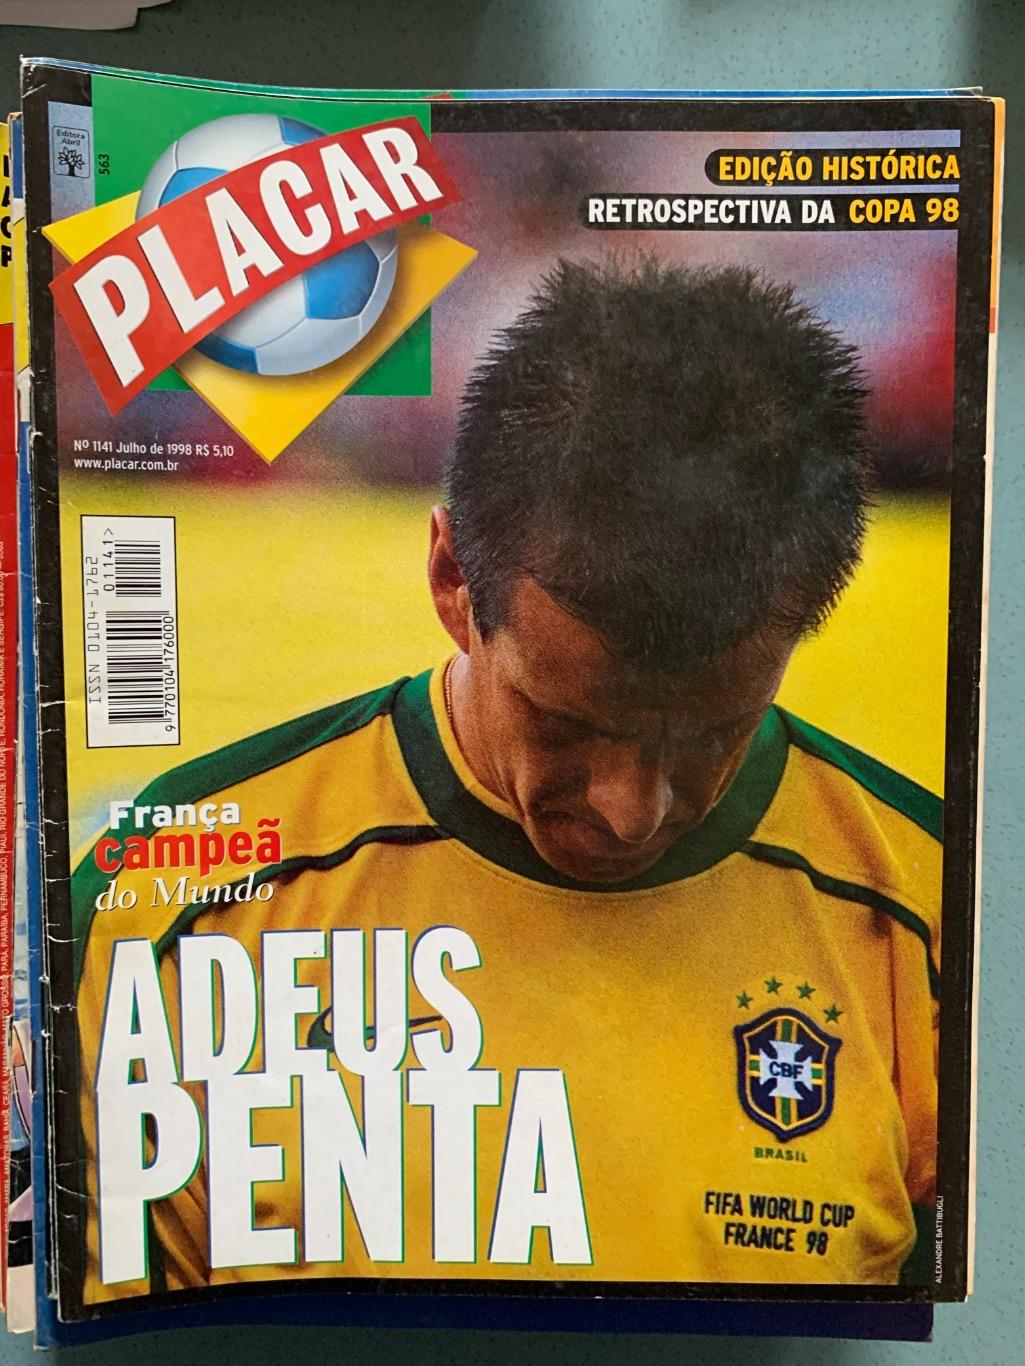 Placar 3 Бразилия на выбор